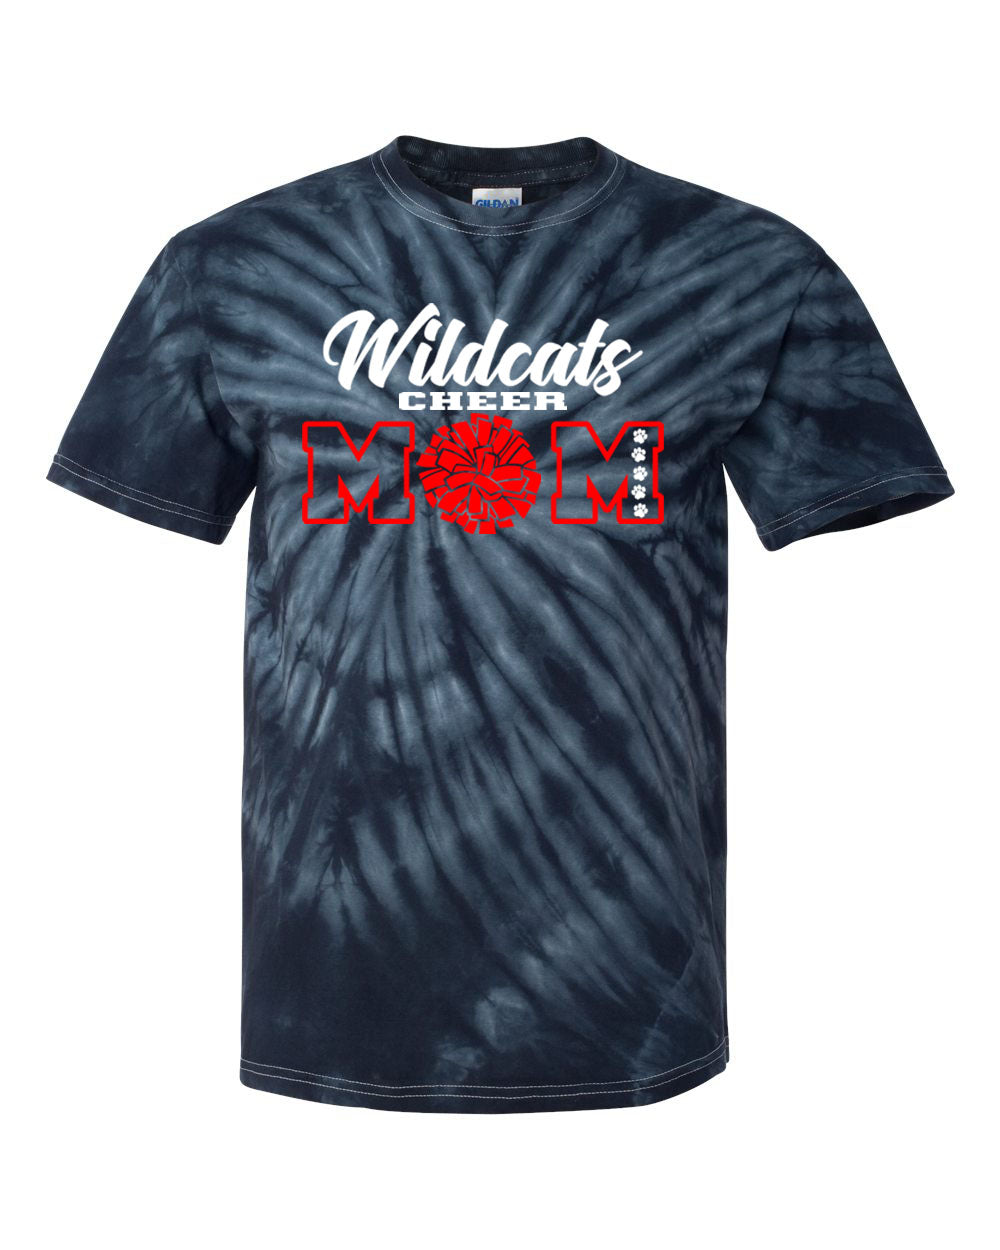 Wildcats Cheer Tie Dye t-shirt Design 7